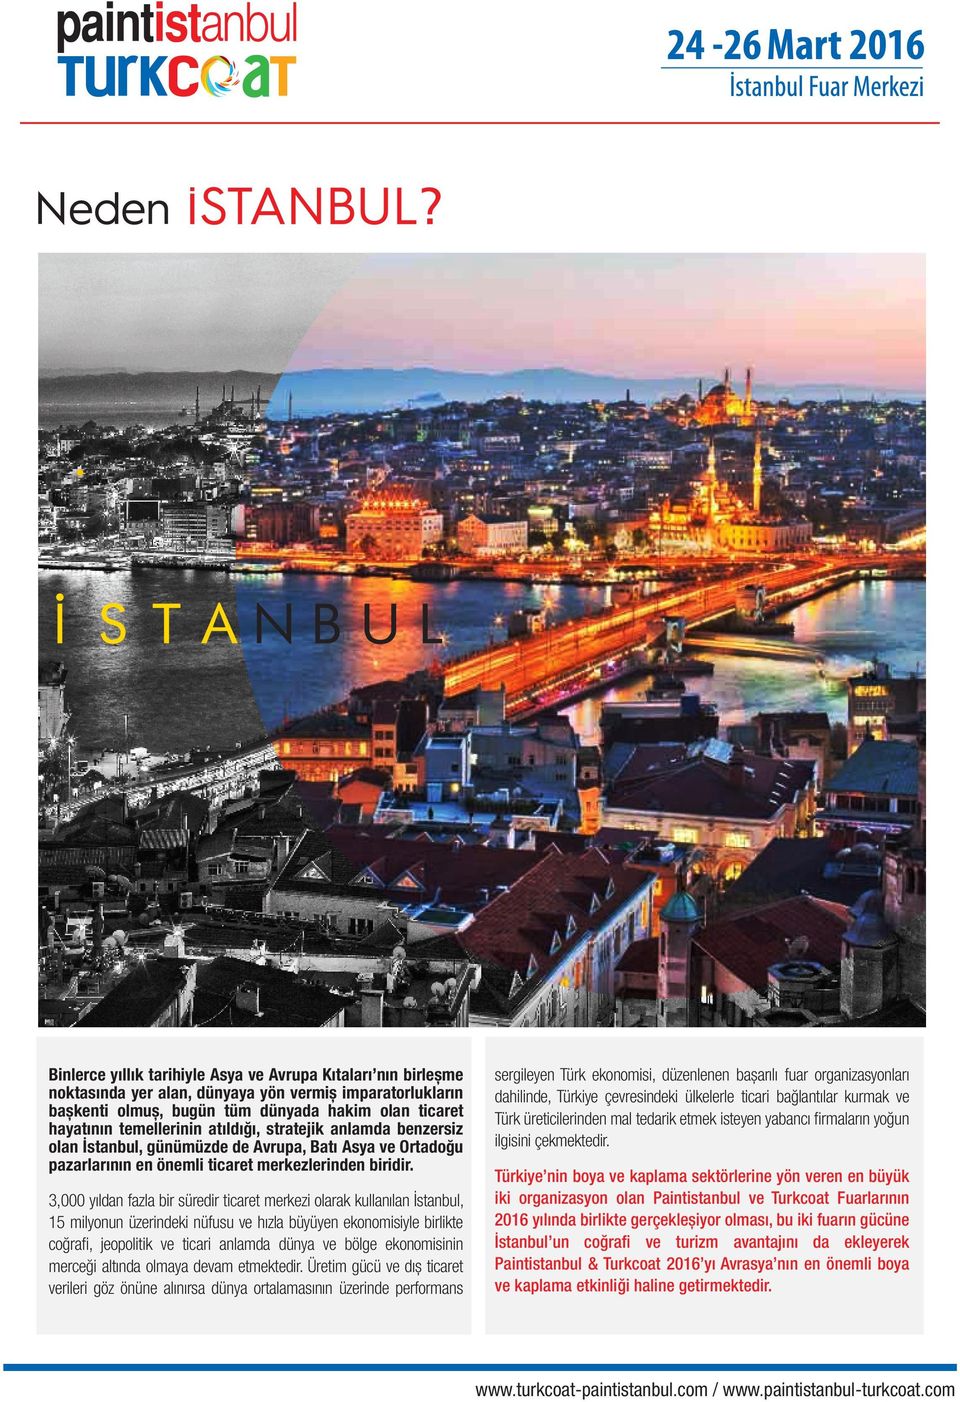 3,000 yıldan fazla bir süredir ticaret merkezi olarak kullanılan İstanbul, 15 milyonun üzerindeki nüfusu ve hızla büyüyen ekonomisiyle birlikte coğrafi, jeopolitik ve ticari anlamda dünya ve bölge